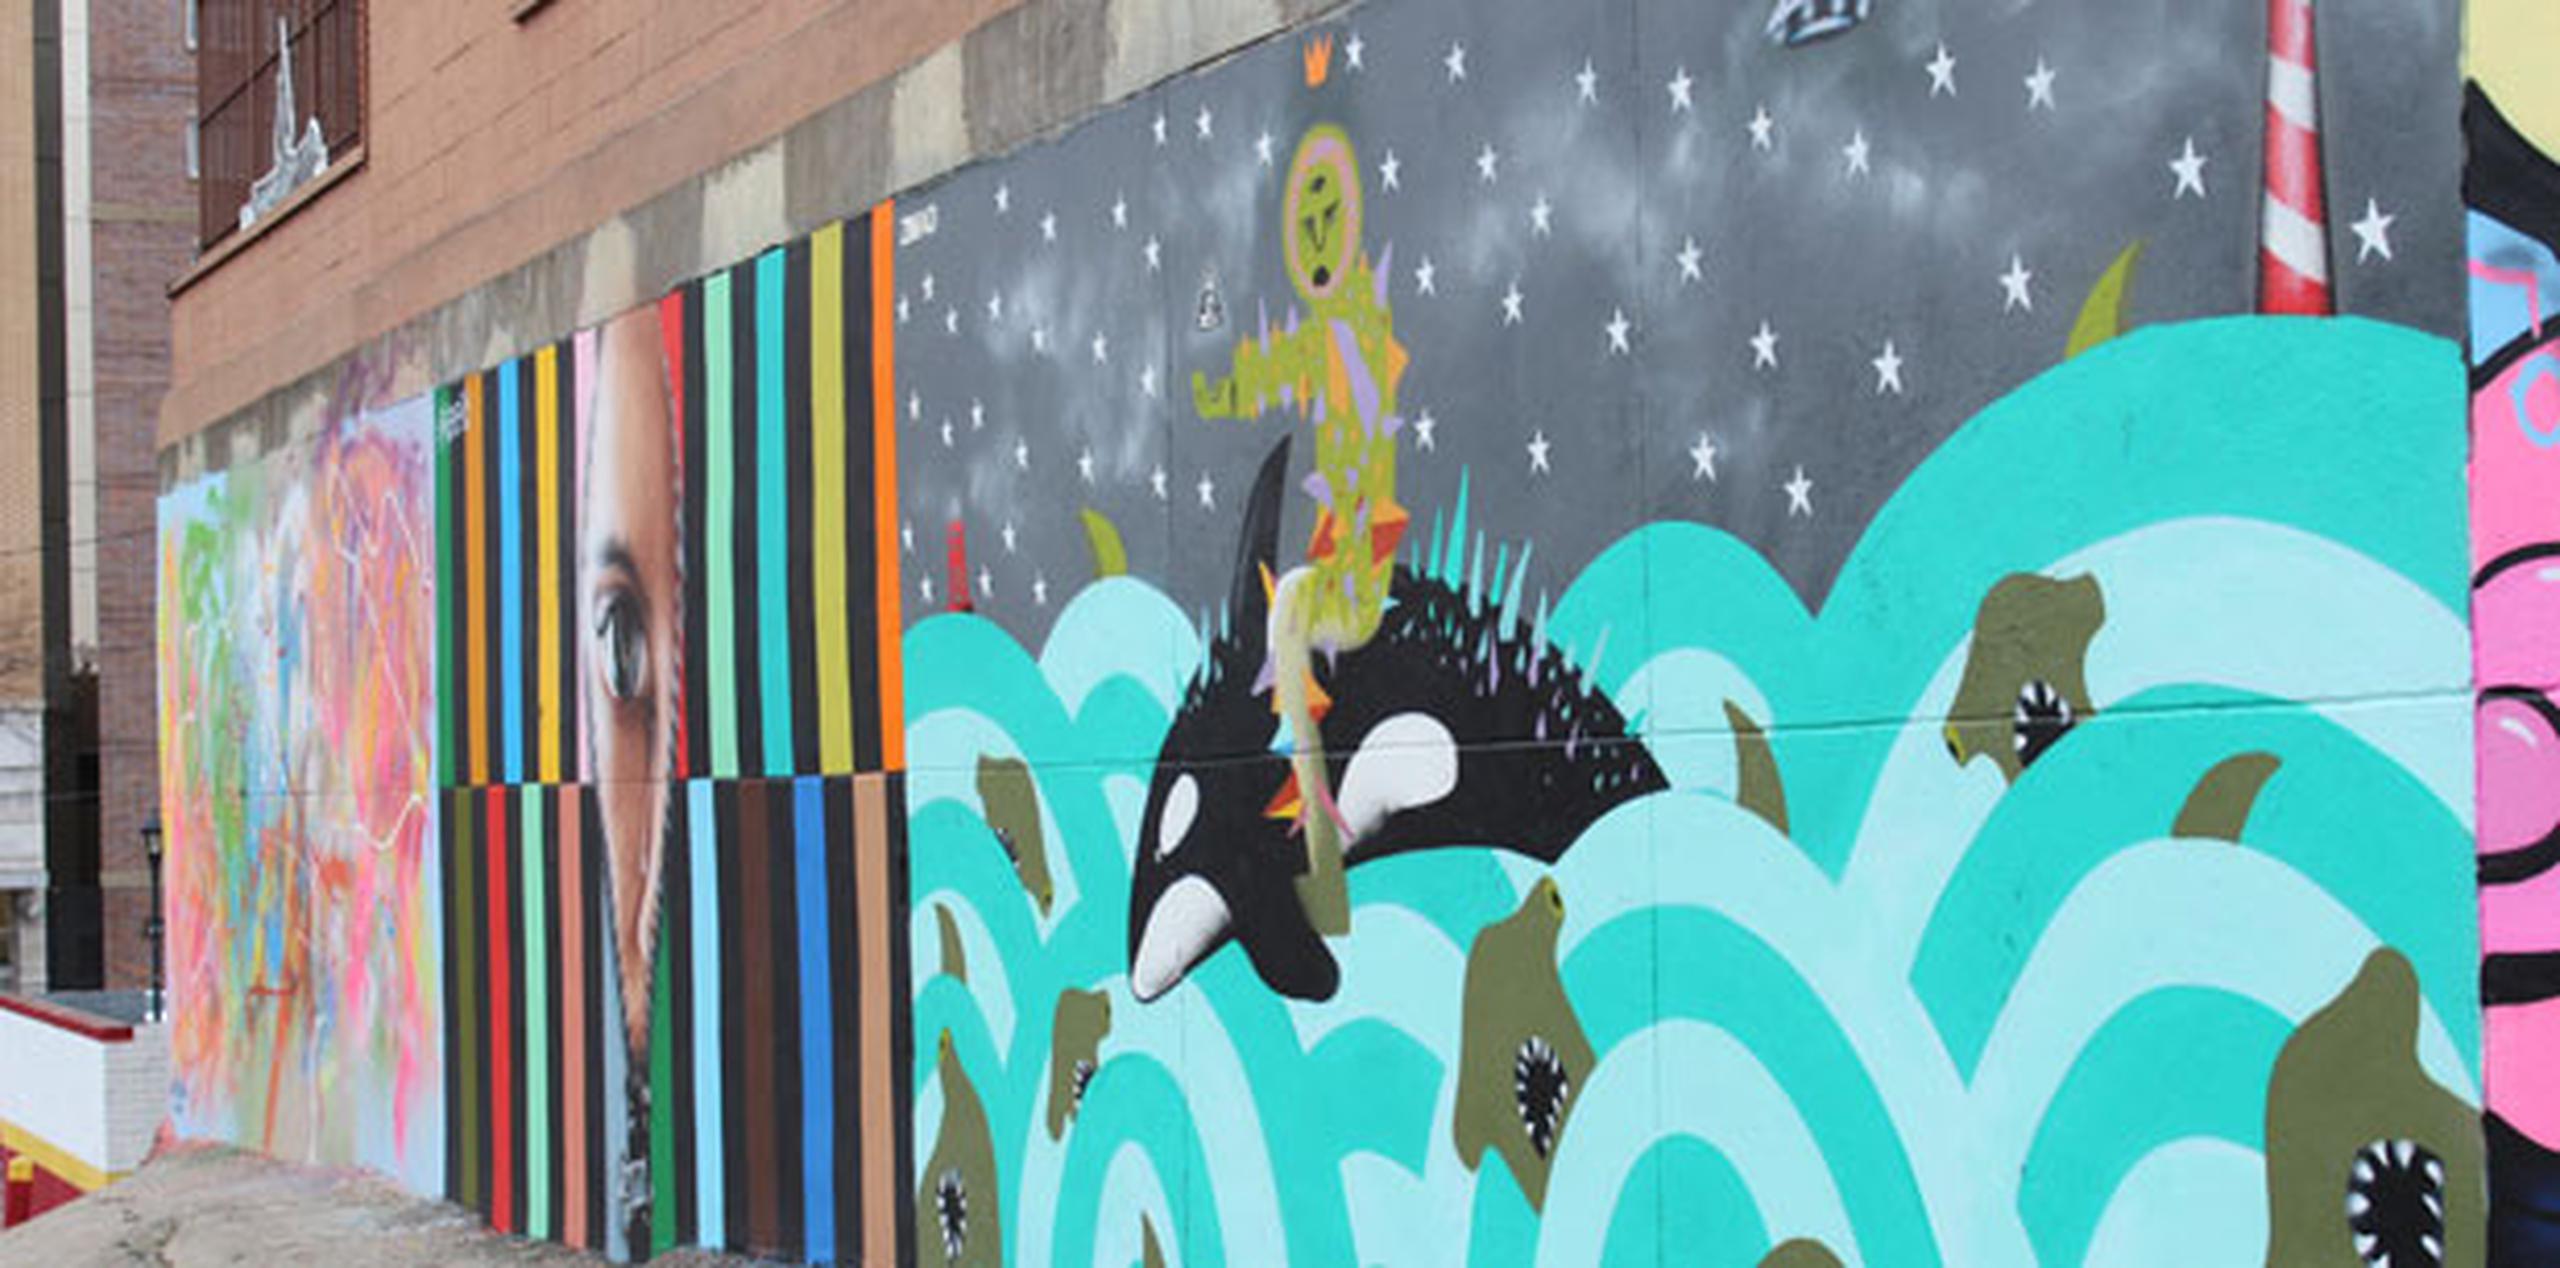 TAG es una organización creada hace cinco años que ha realizado unos 60 murales y que ha logrado reunir a artistas de arte urbano para crear obras en diversos espacios en El Bronx, un condado de mayoría latina. (EFE)